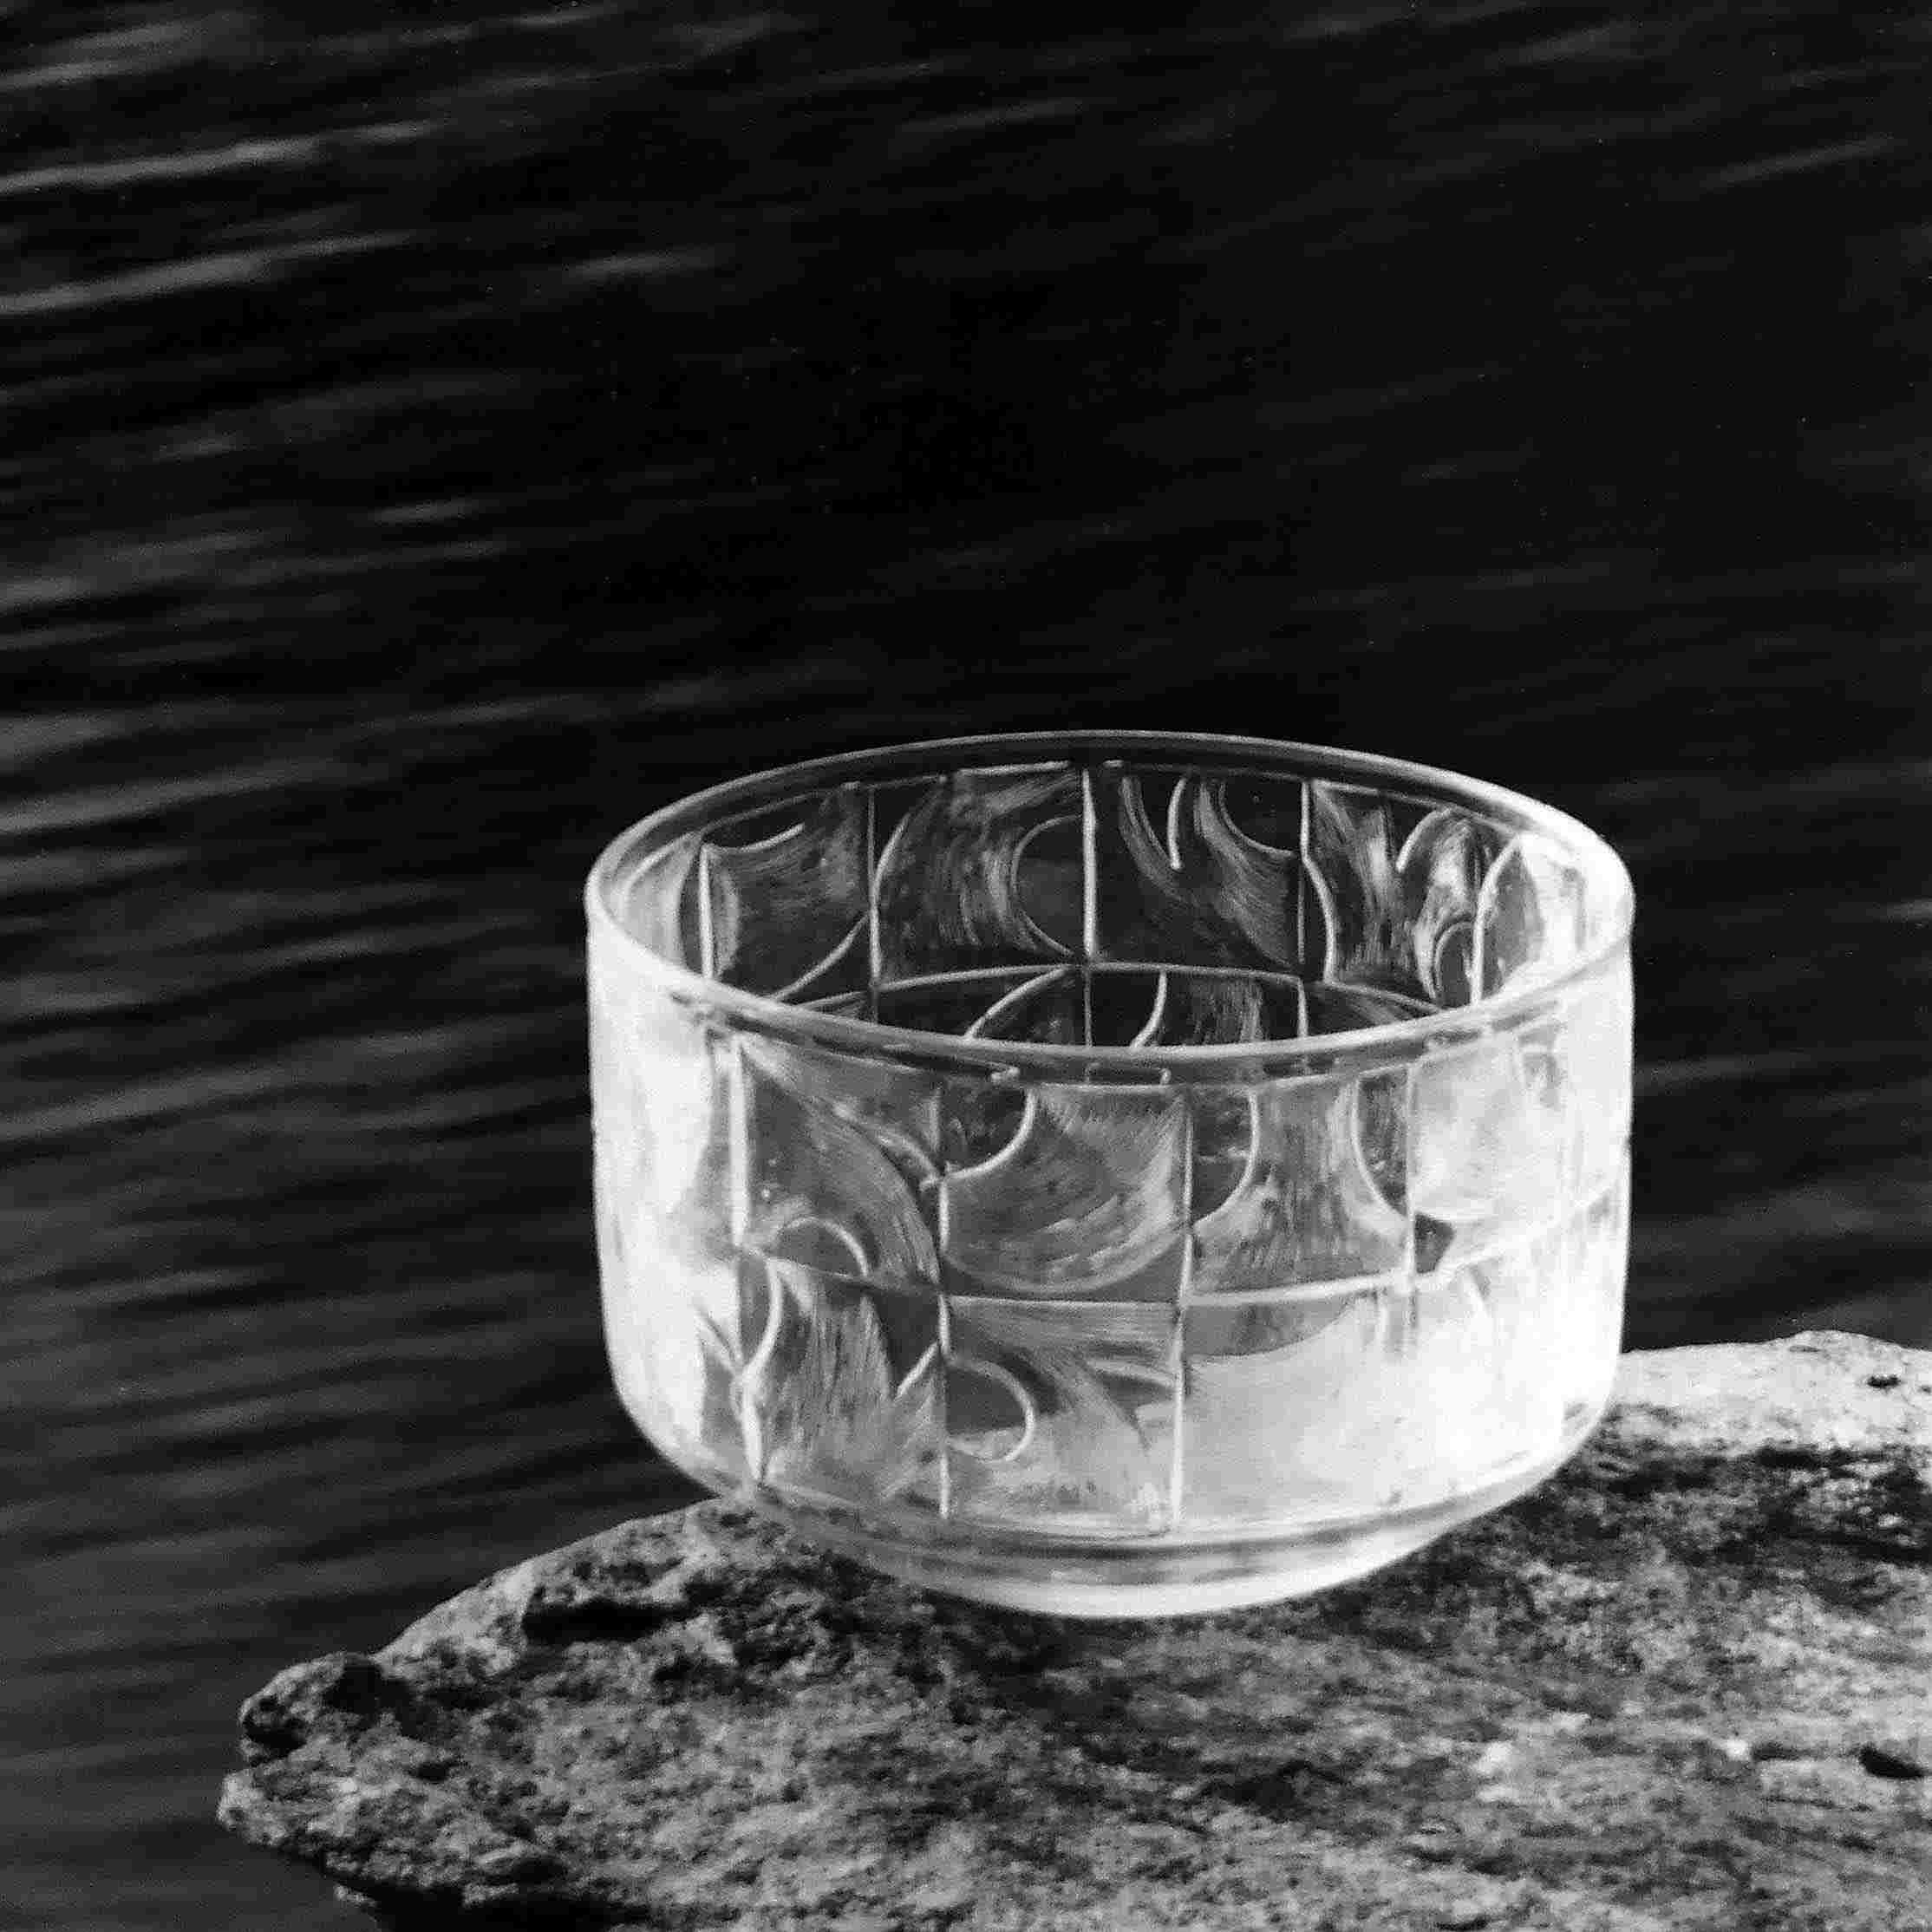 Skål i blank gravyr gjord i hyttan den 6:e augusti 1965 av Henry Bjerding, Graverad av Erich Pohl den 18:e augusti 1965. Foto: John Selbing.